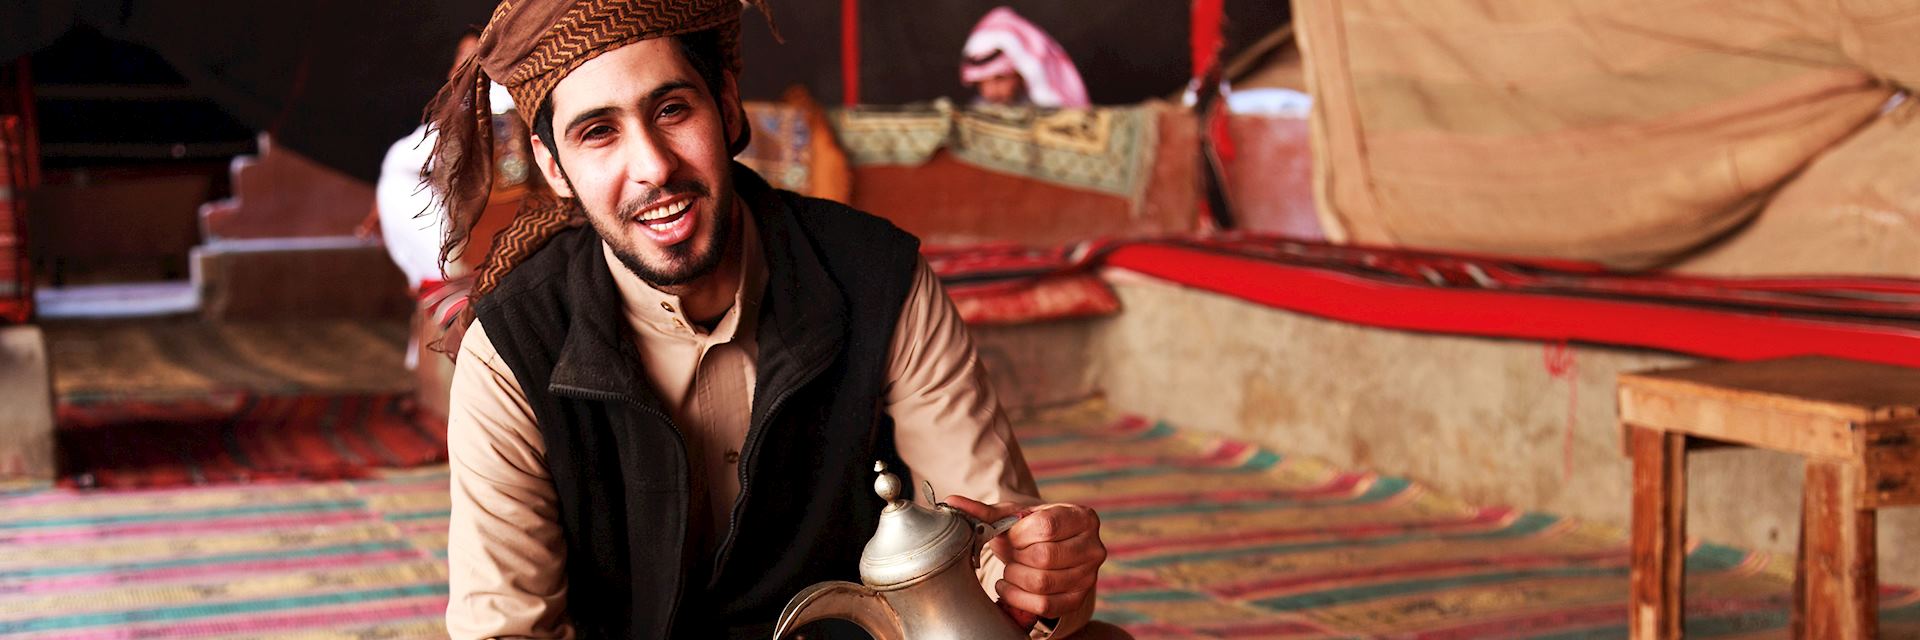 Man serving coffee in Jordan